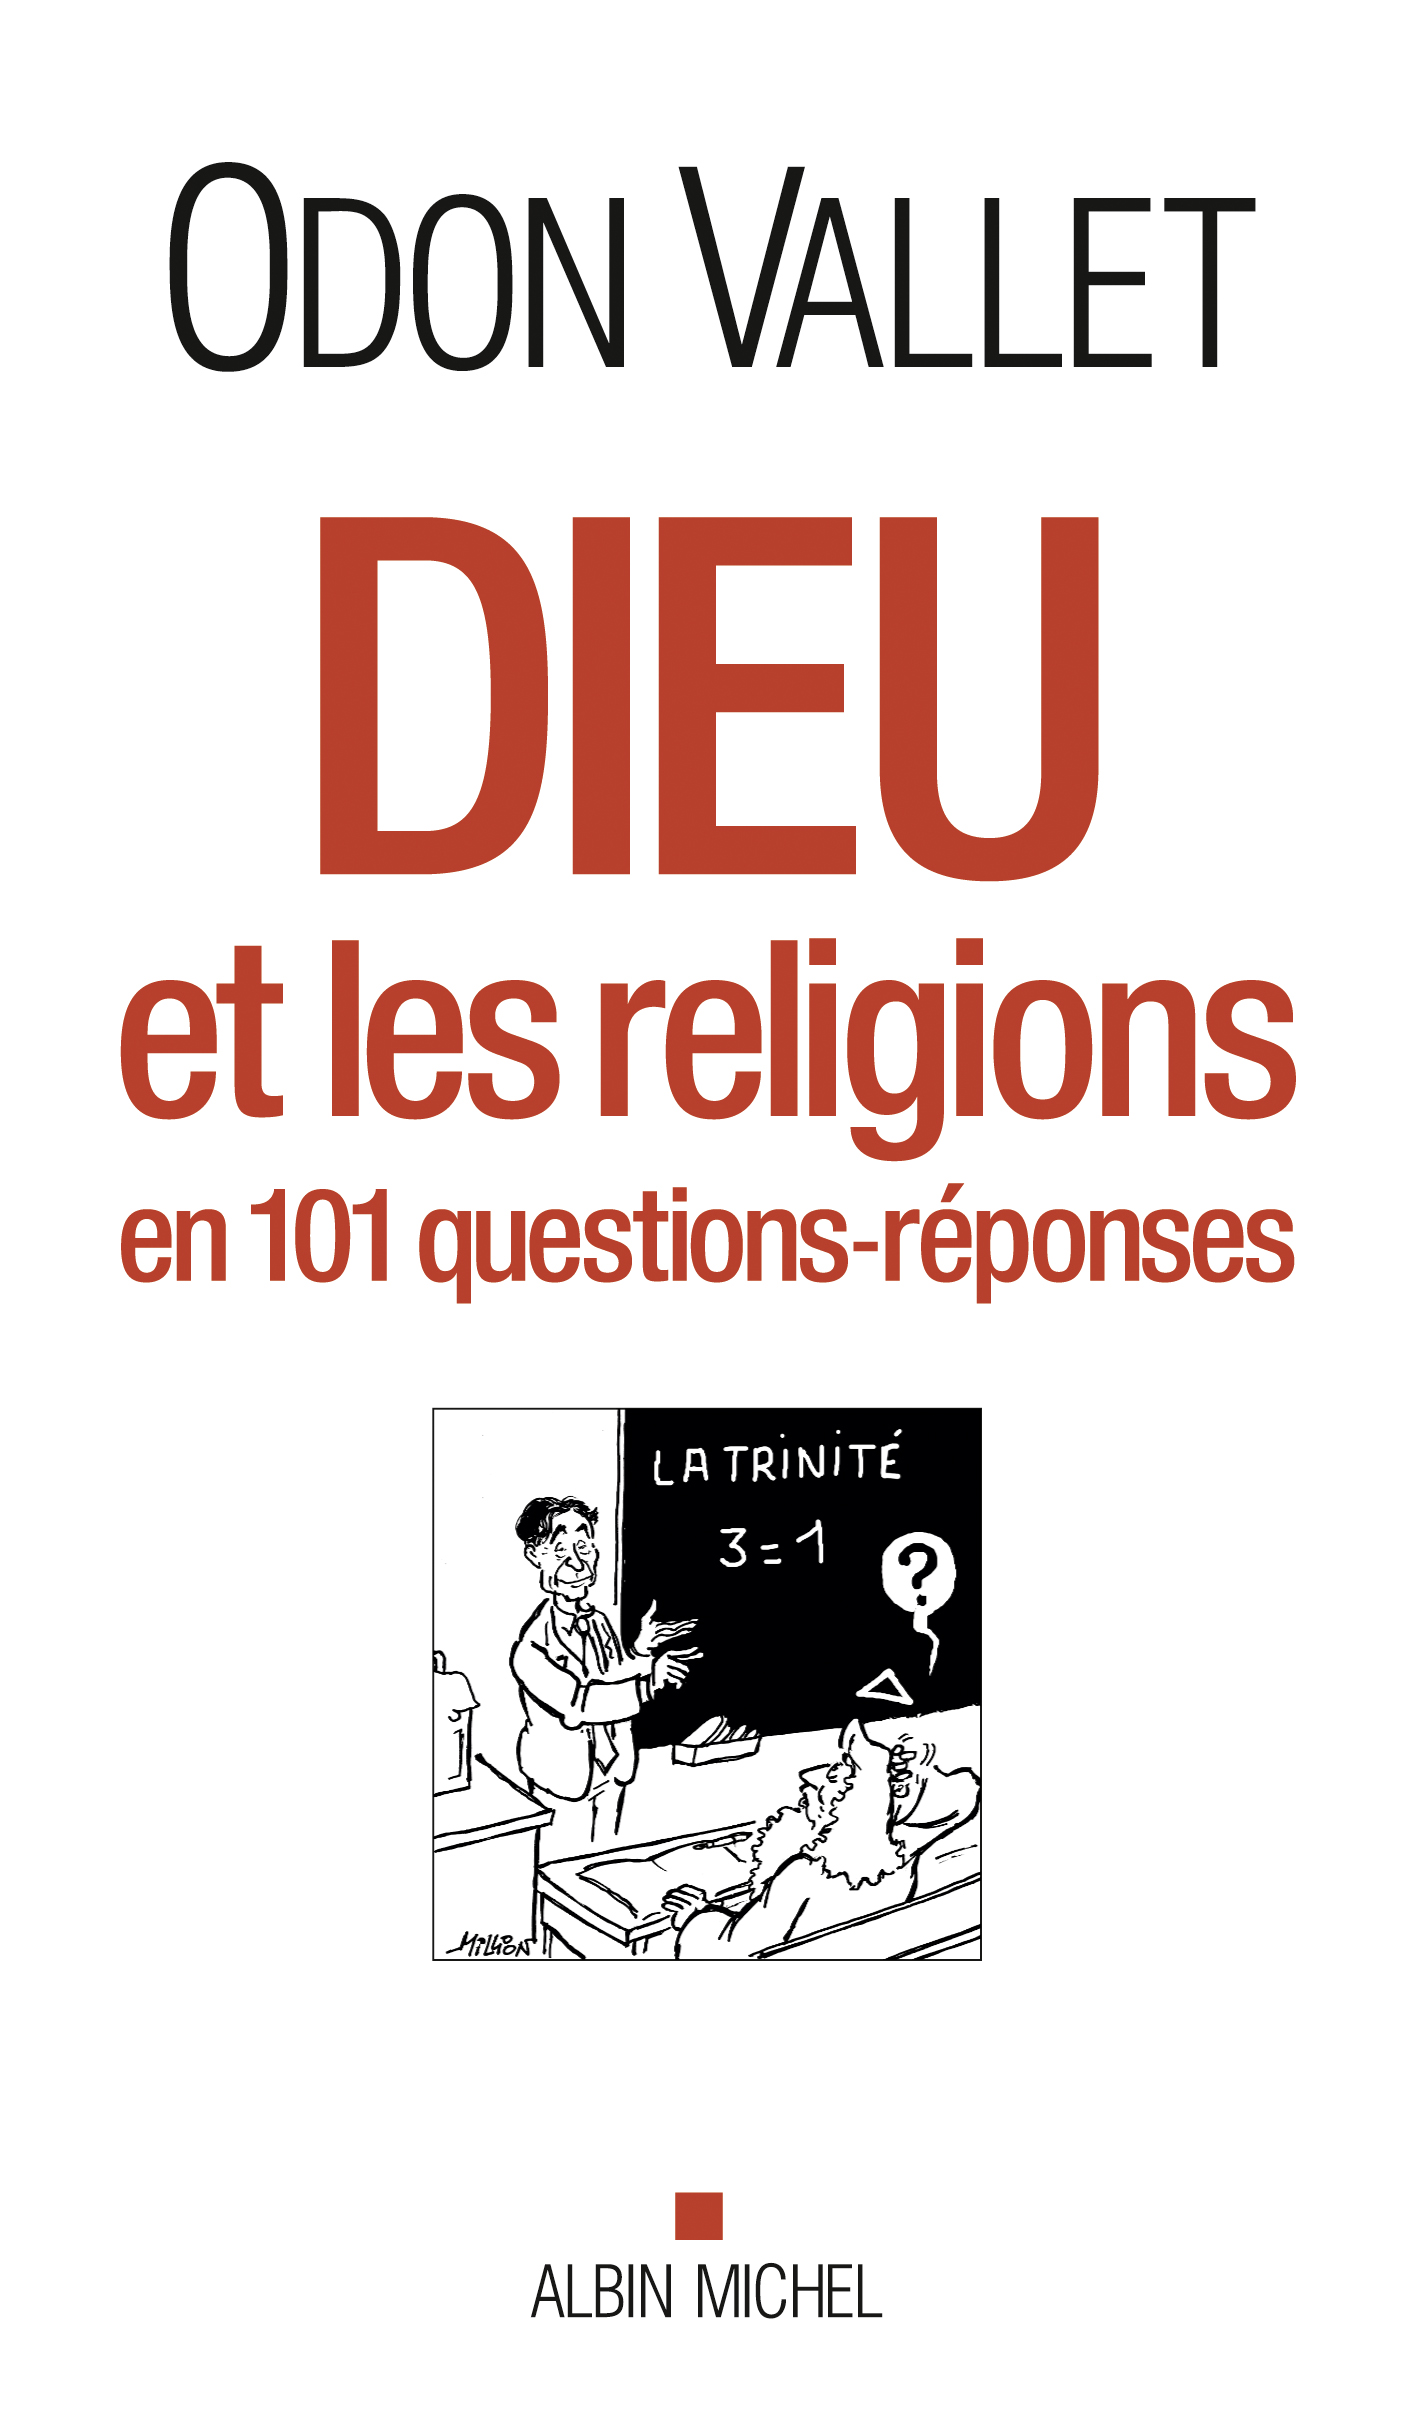 Couverture du livre Dieu et les religions en 101 questions-réponses